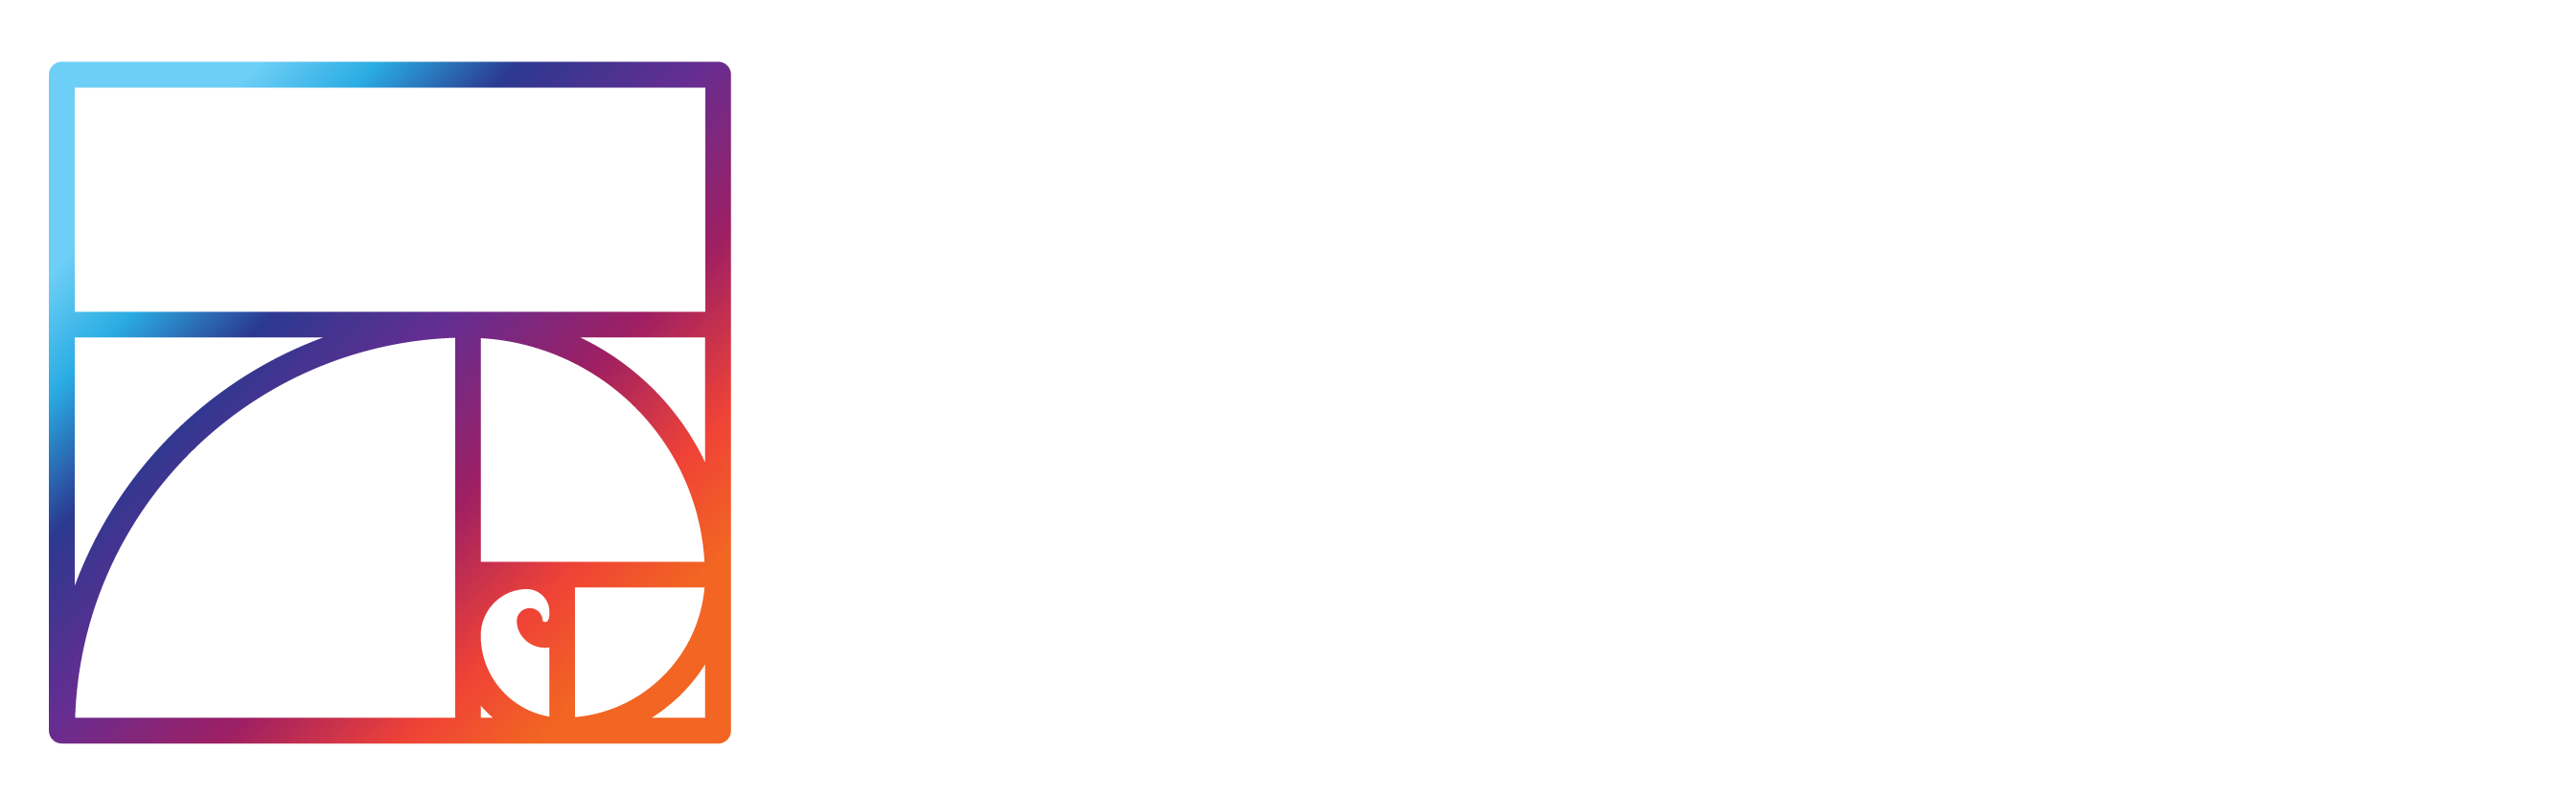 Resurgent Biosciences logo